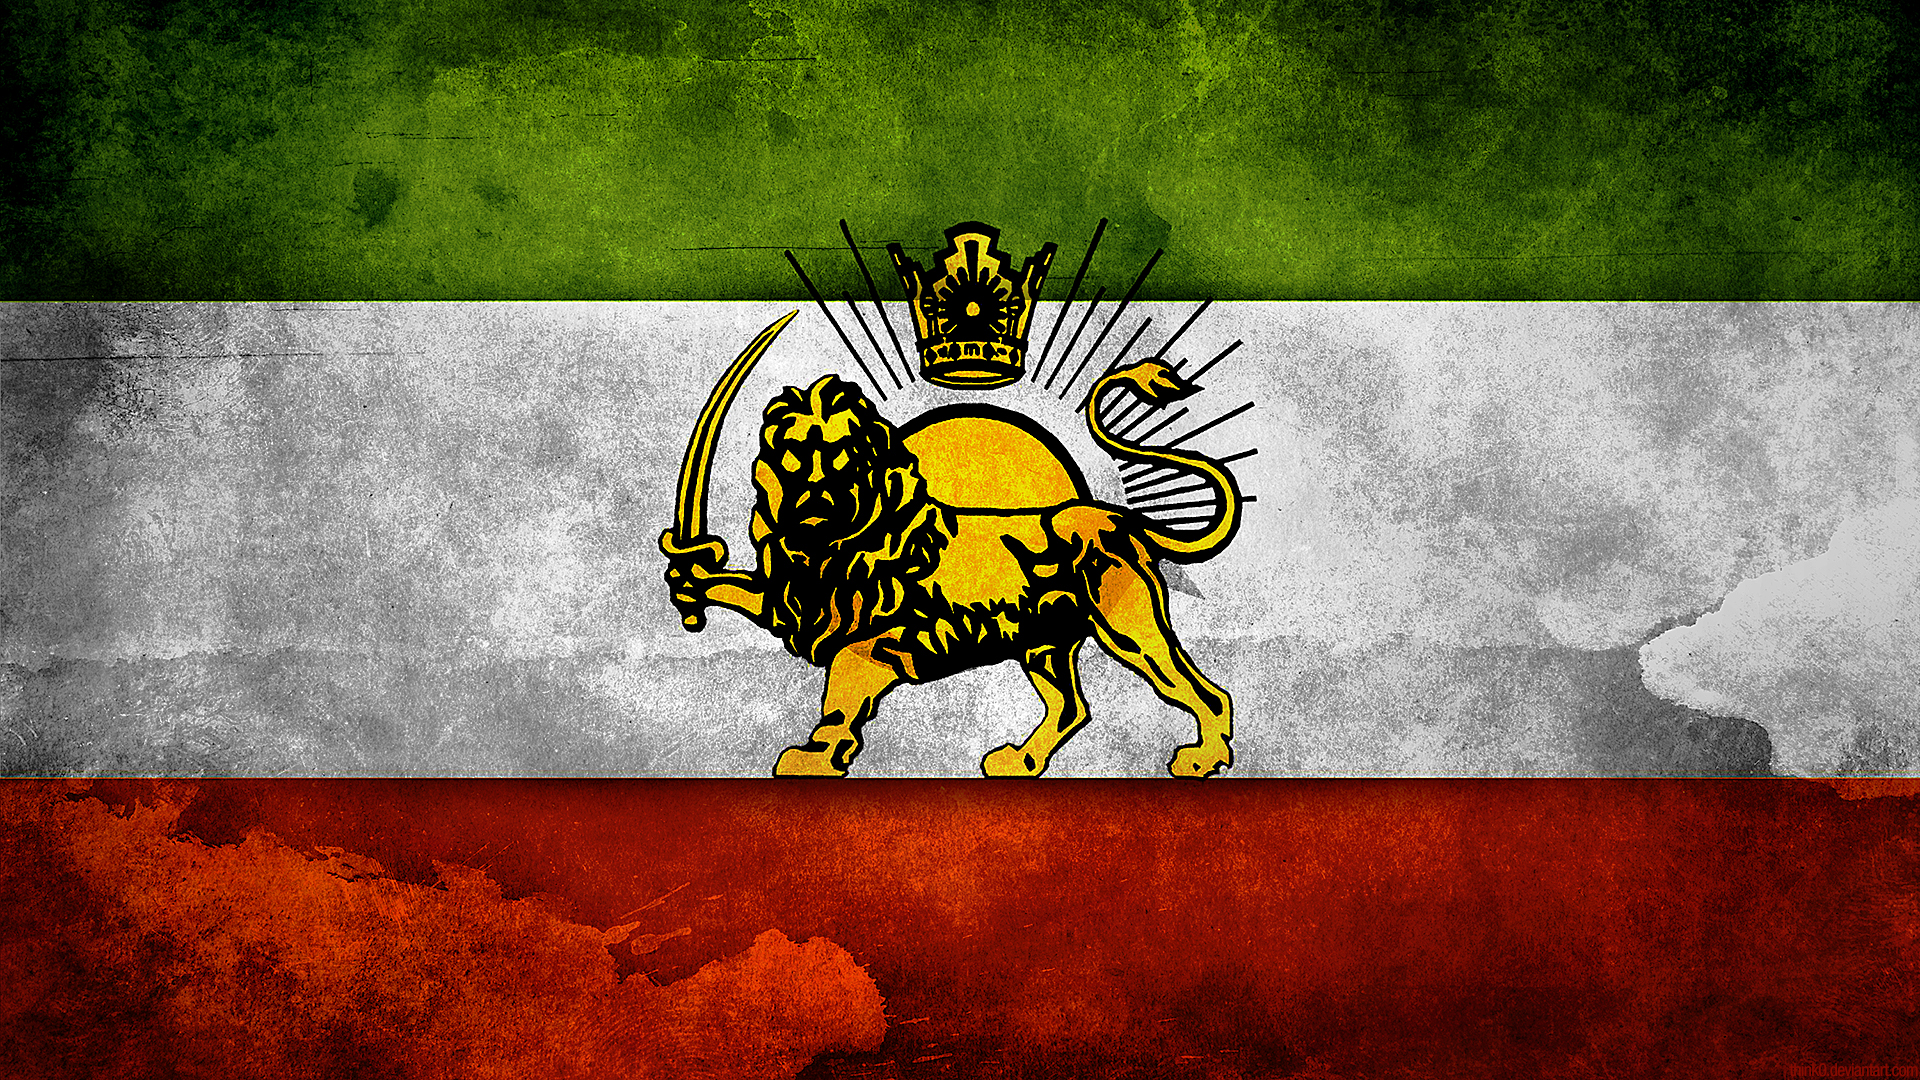 Descarga gratuita de fondo de pantalla para móvil de Banderas, Bandera, Miscelaneo, Bandera De Irán.